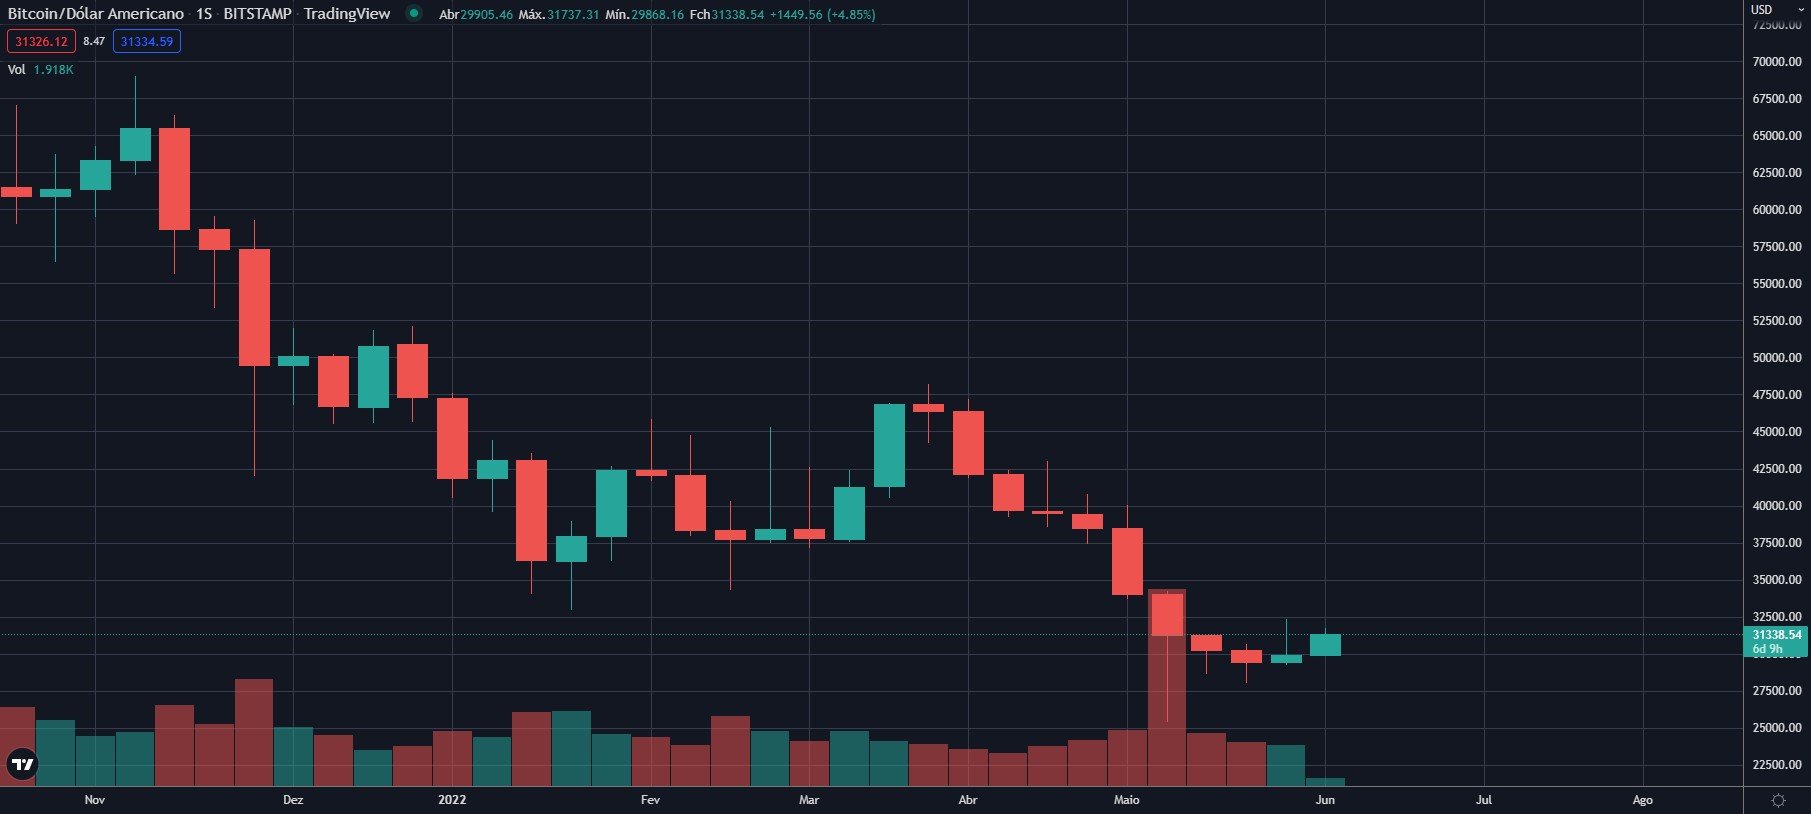 Gráfico de velas semanal do bitcoin